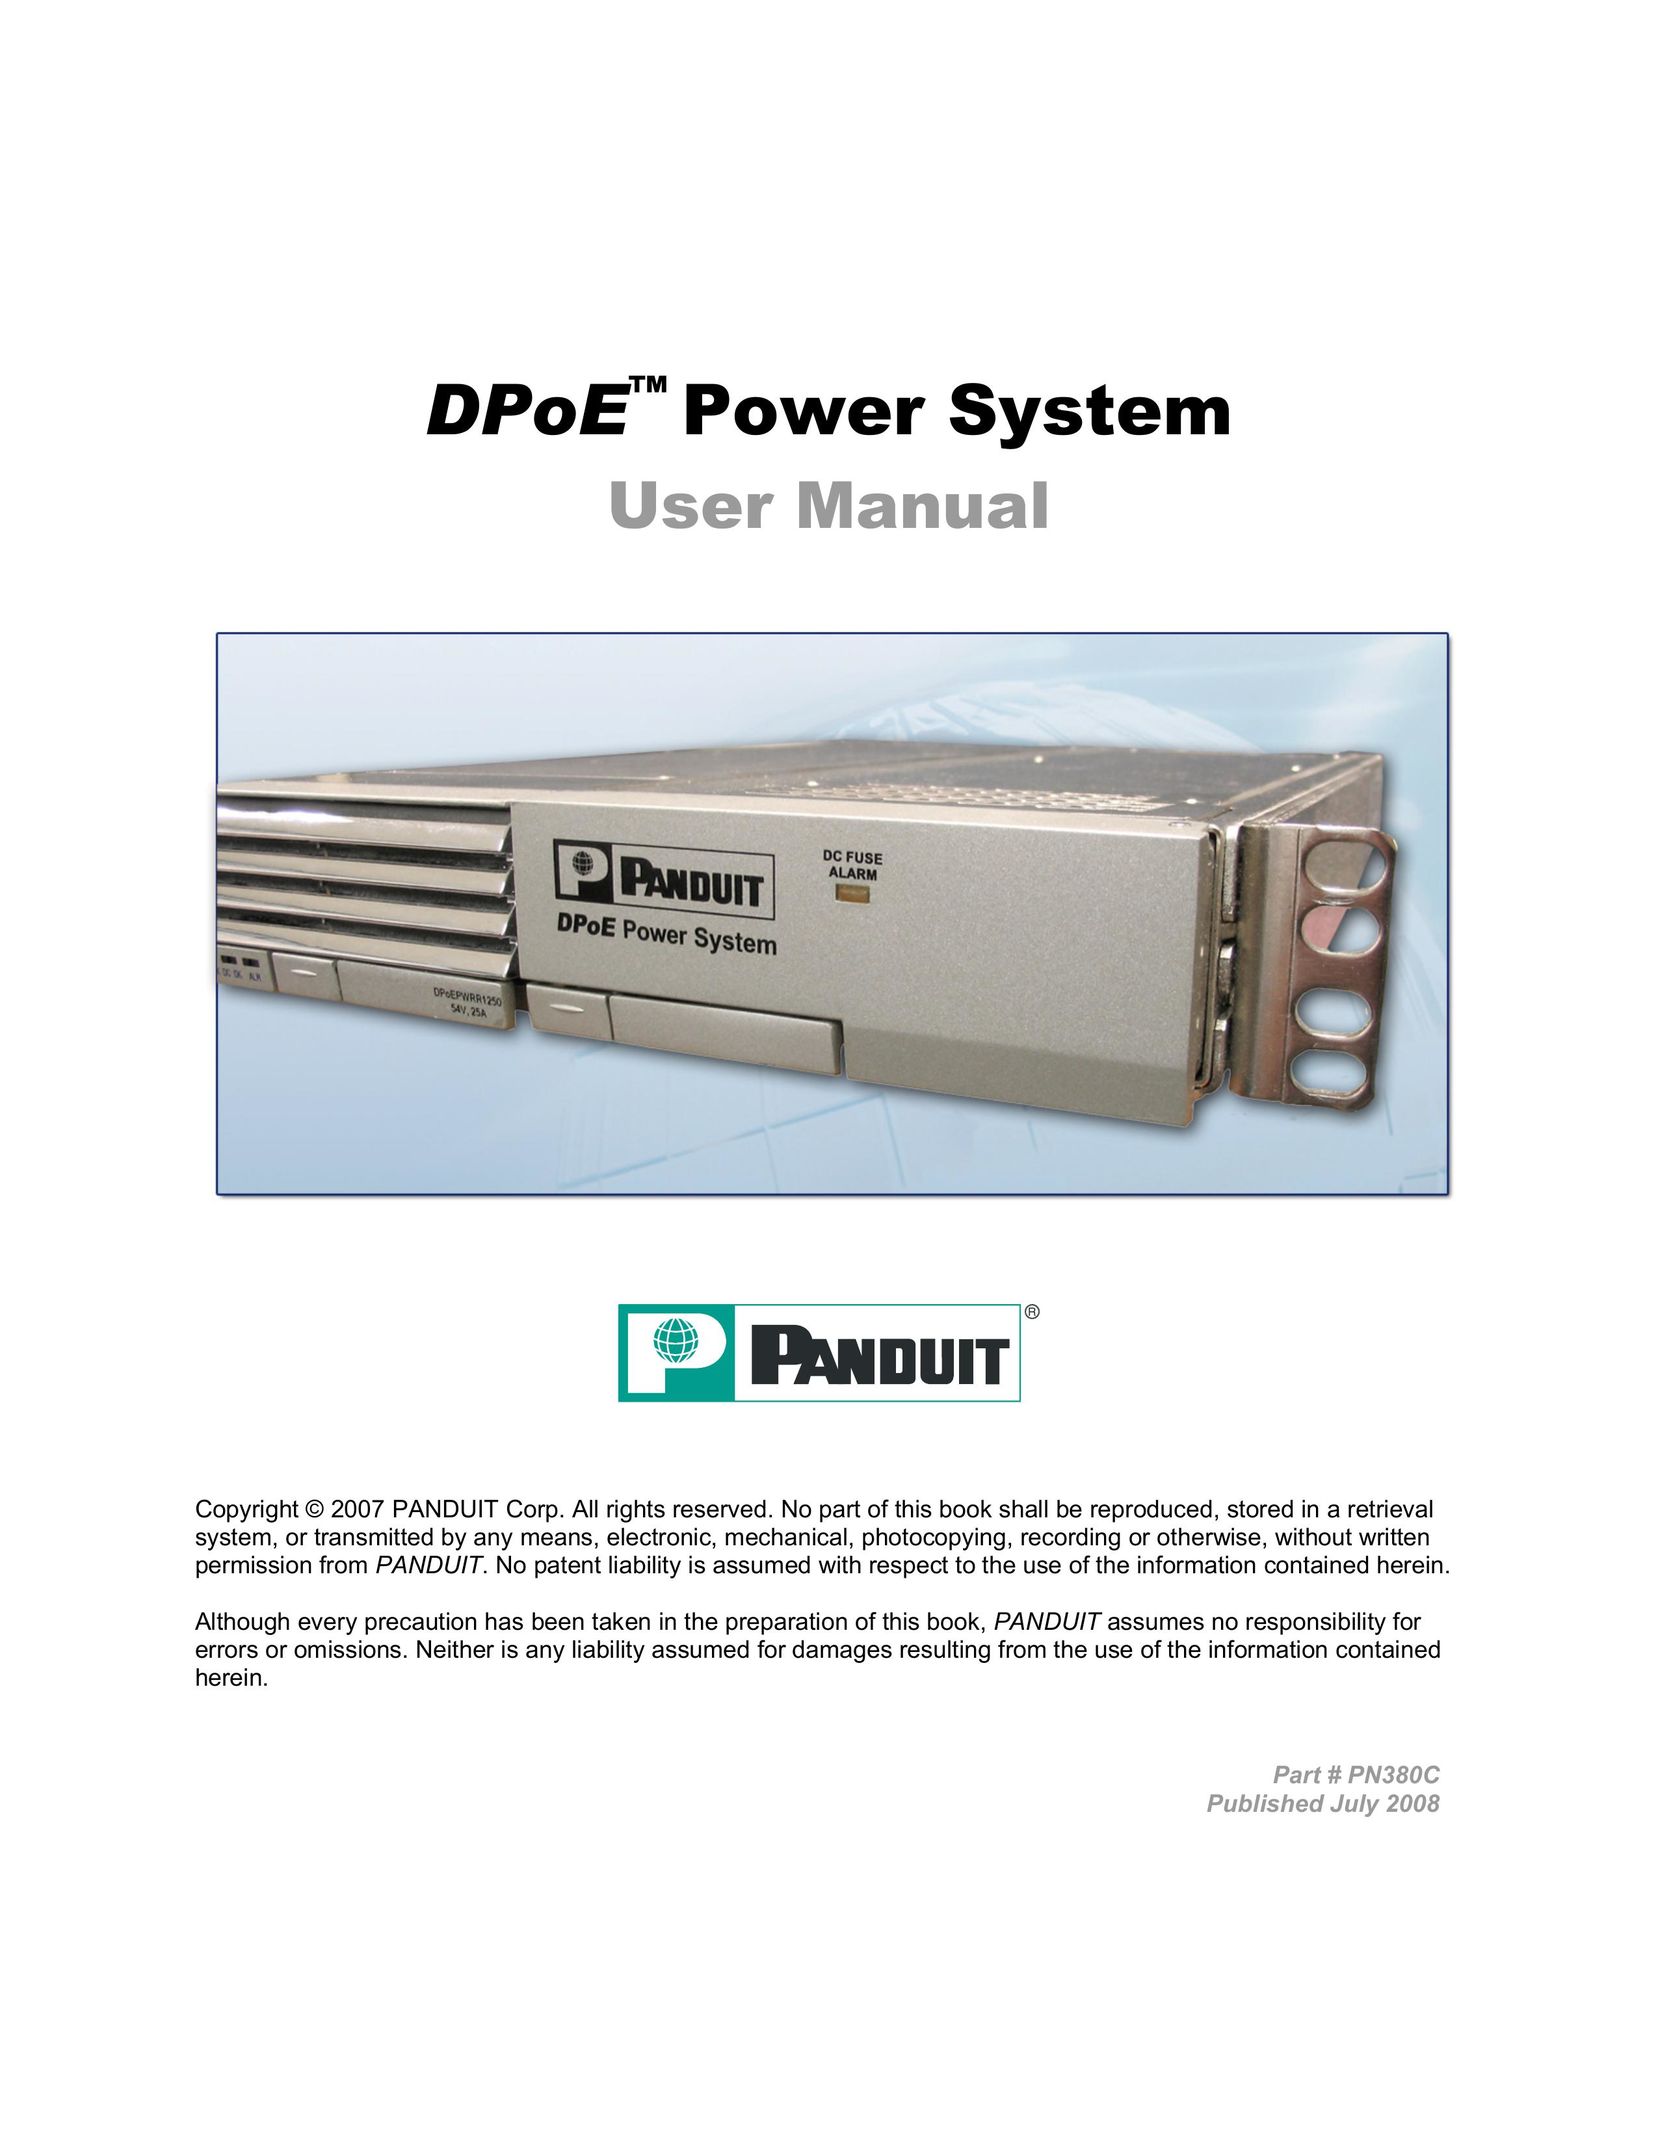 Panduit PN380C Power Supply User Manual